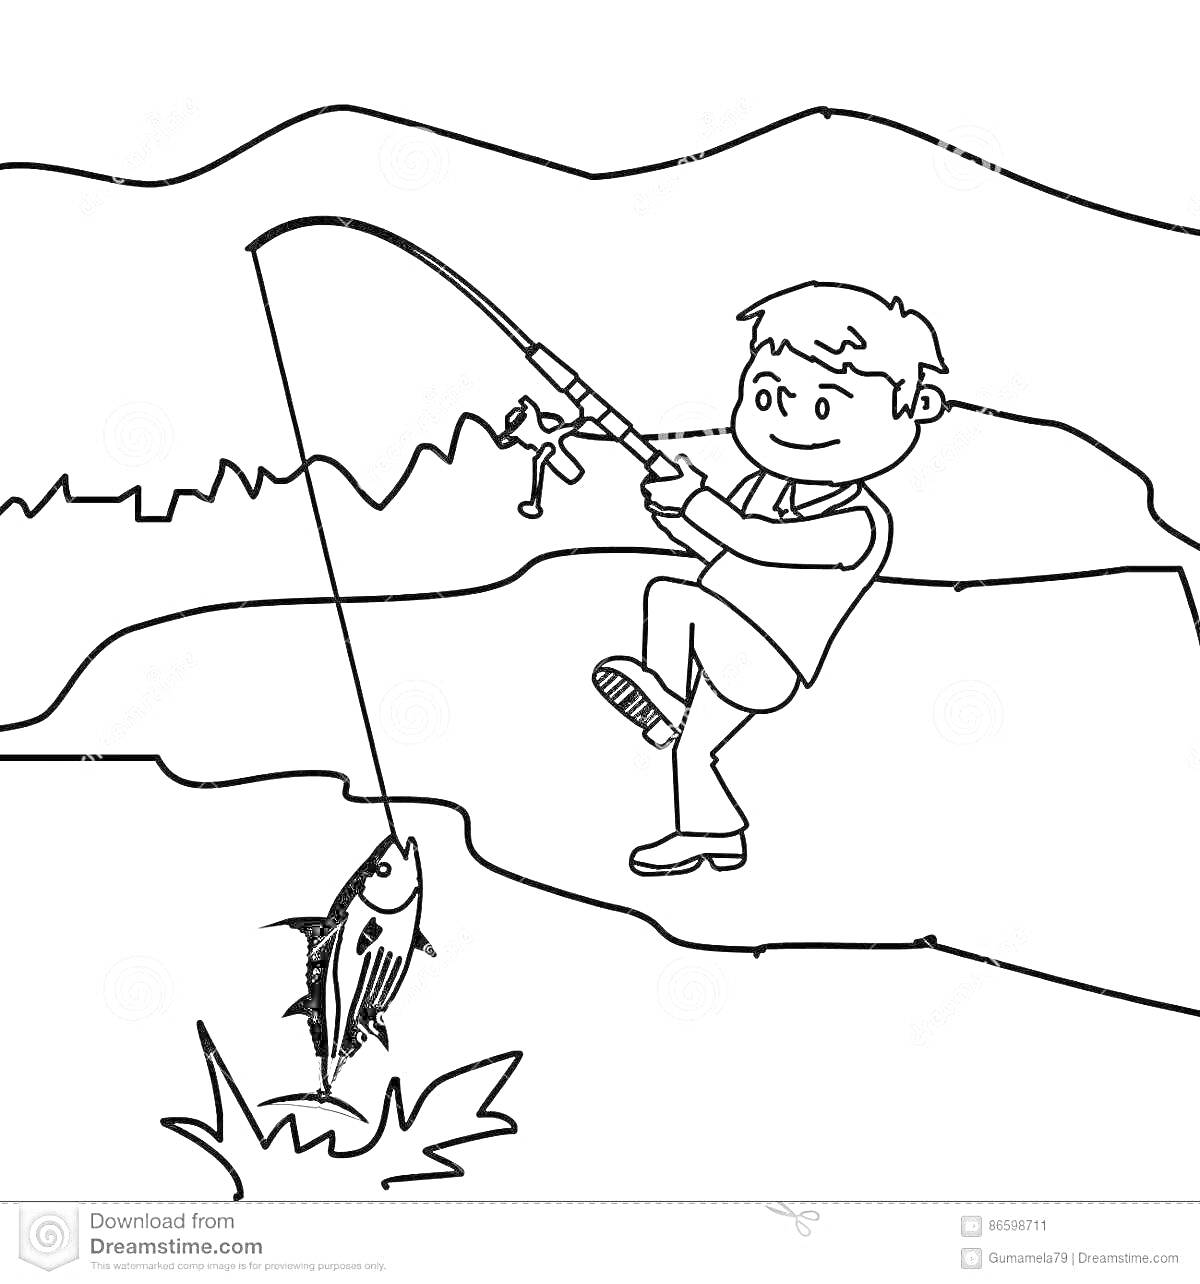 Раскраска Мальчик ловит рыбу на удочку у реки с горным пейзажем на заднем плане